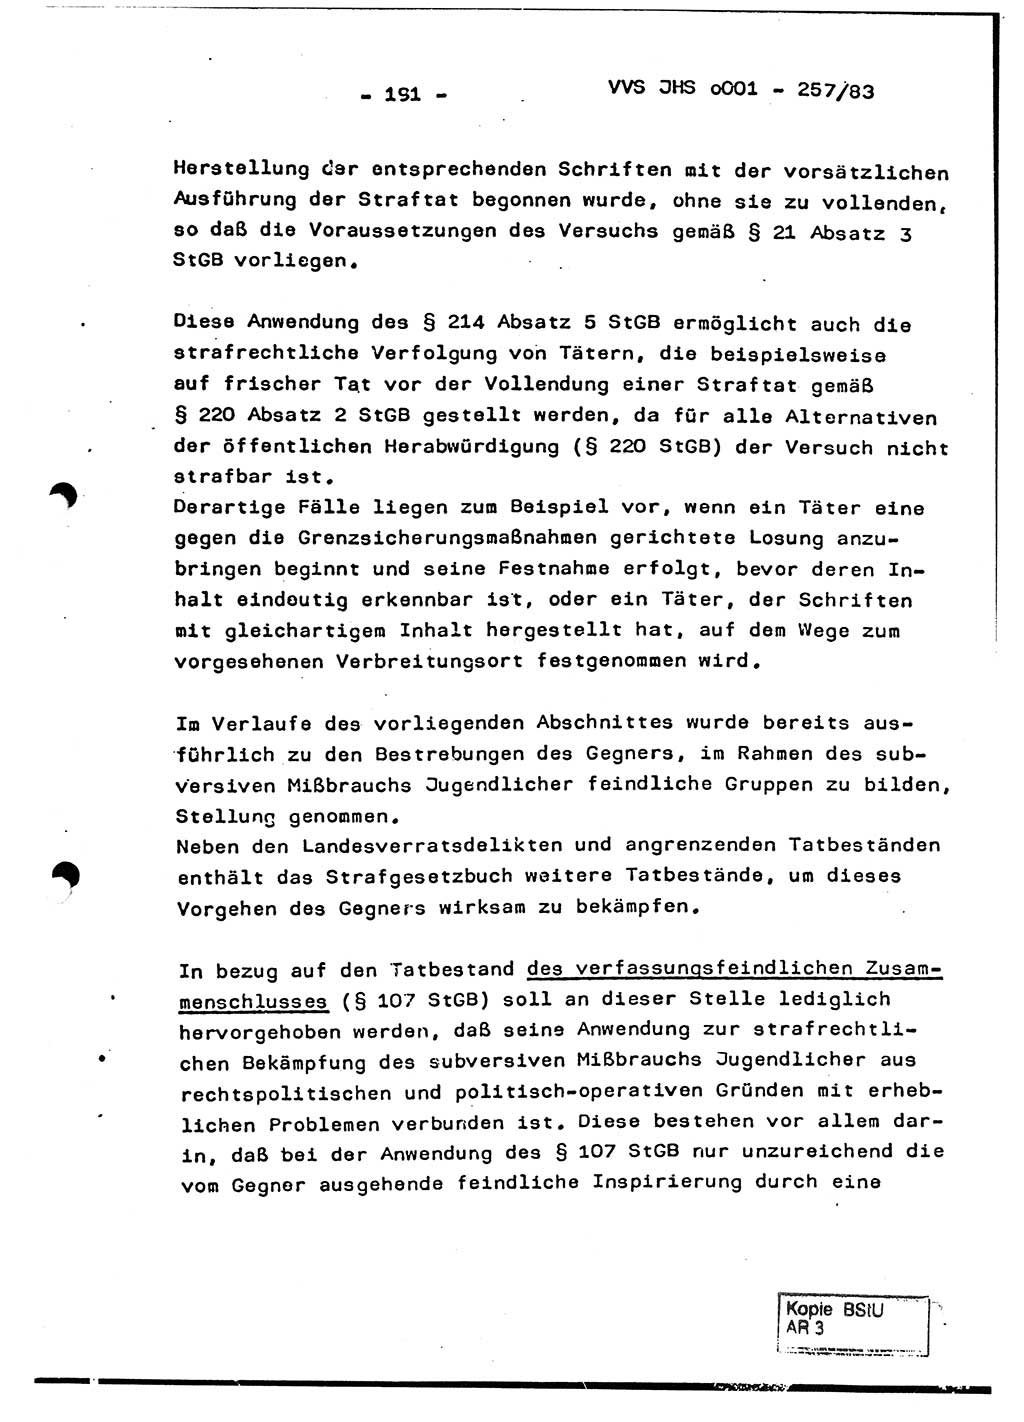 Dissertation, Oberst Helmut Lubas (BV Mdg.), Oberstleutnant Manfred Eschberger (HA IX), Oberleutnant Hans-Jürgen Ludwig (JHS), Ministerium für Staatssicherheit (MfS) [Deutsche Demokratische Republik (DDR)], Juristische Hochschule (JHS), Vertrauliche Verschlußsache (VVS) o001-257/83, Potsdam 1983, Seite 191 (Diss. MfS DDR JHS VVS o001-257/83 1983, S. 191)